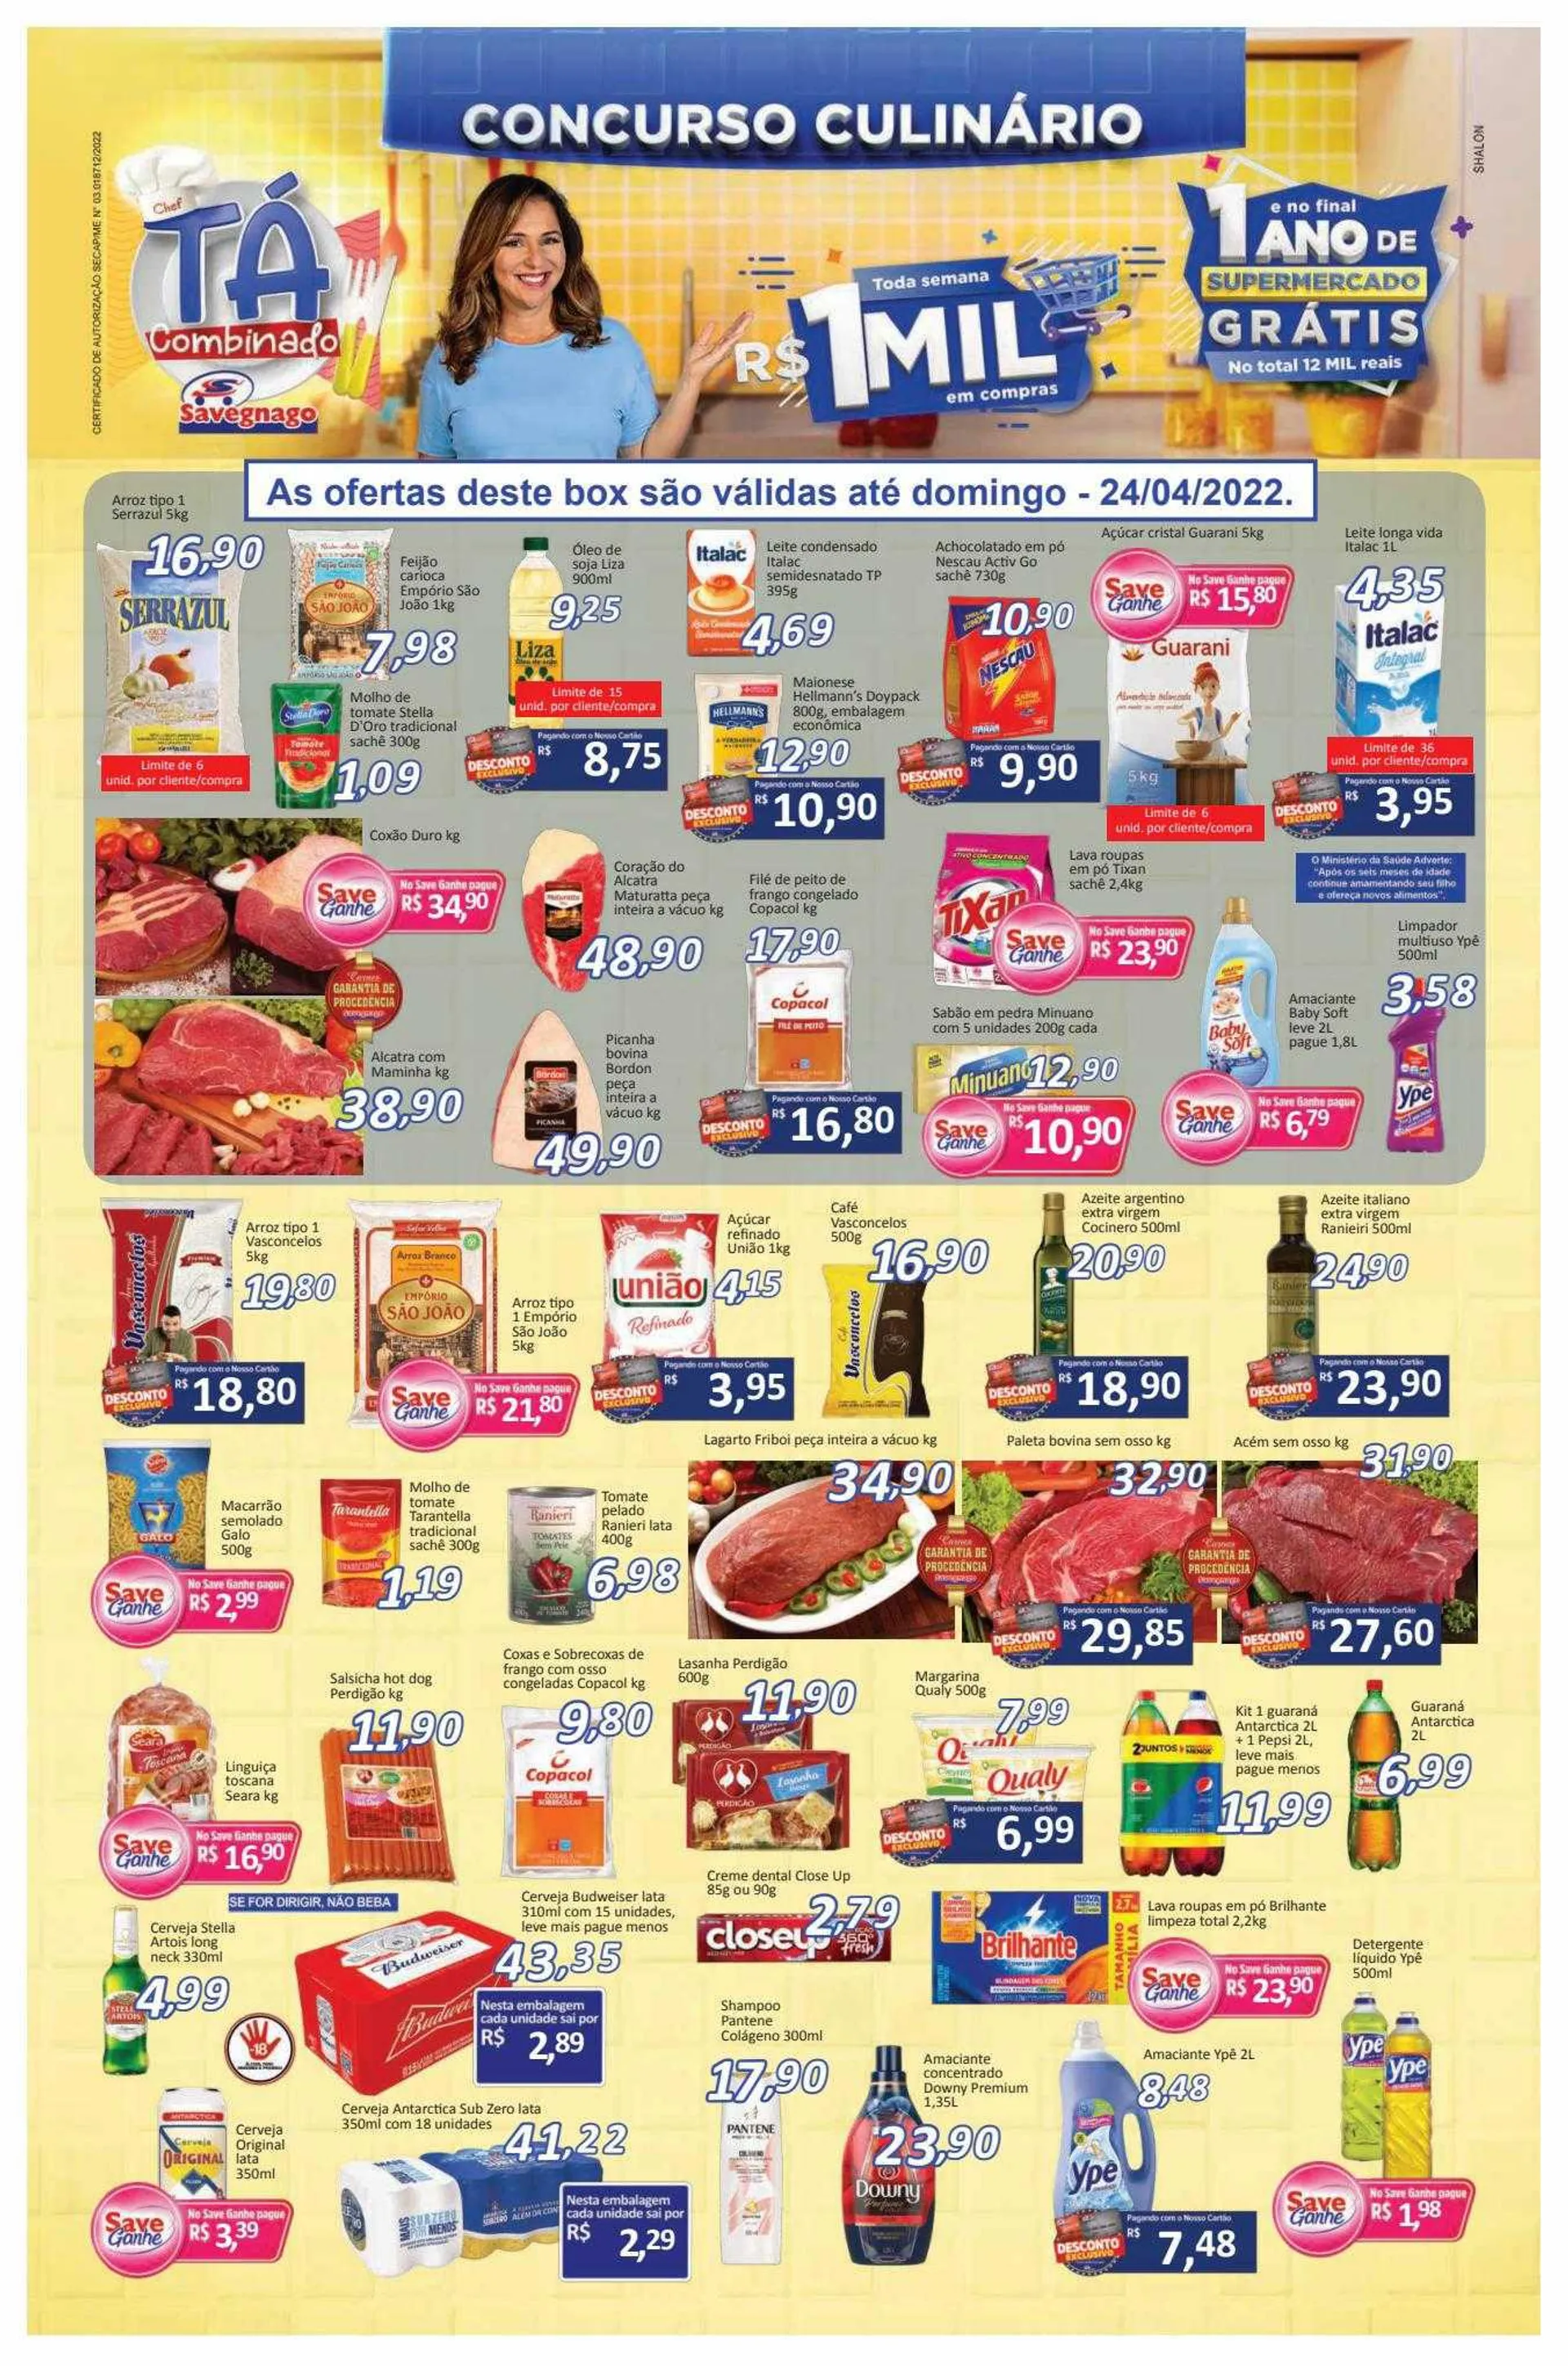 Encarte de Encarte Supermercados Savegnago 27 de junho até 29 de junho 2024 - Pagina 1